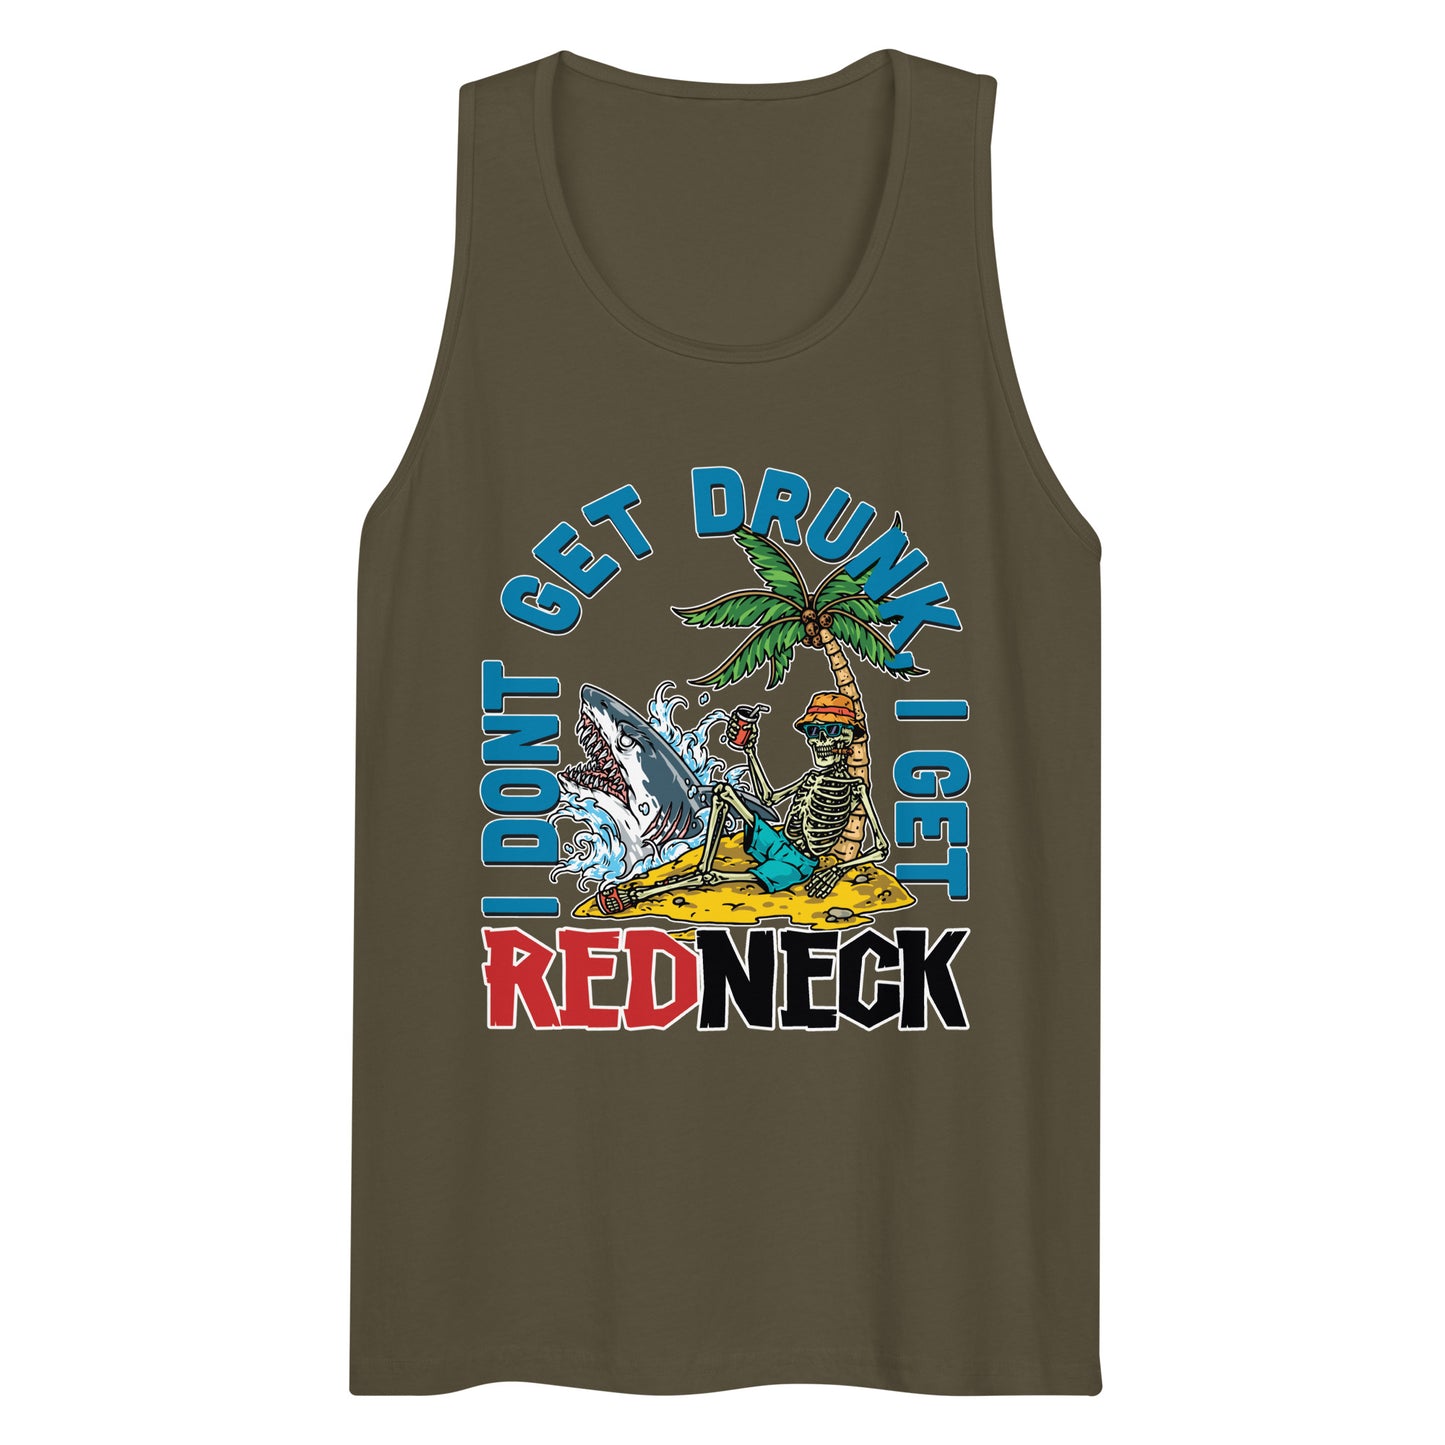 Get Redneck Tank Top